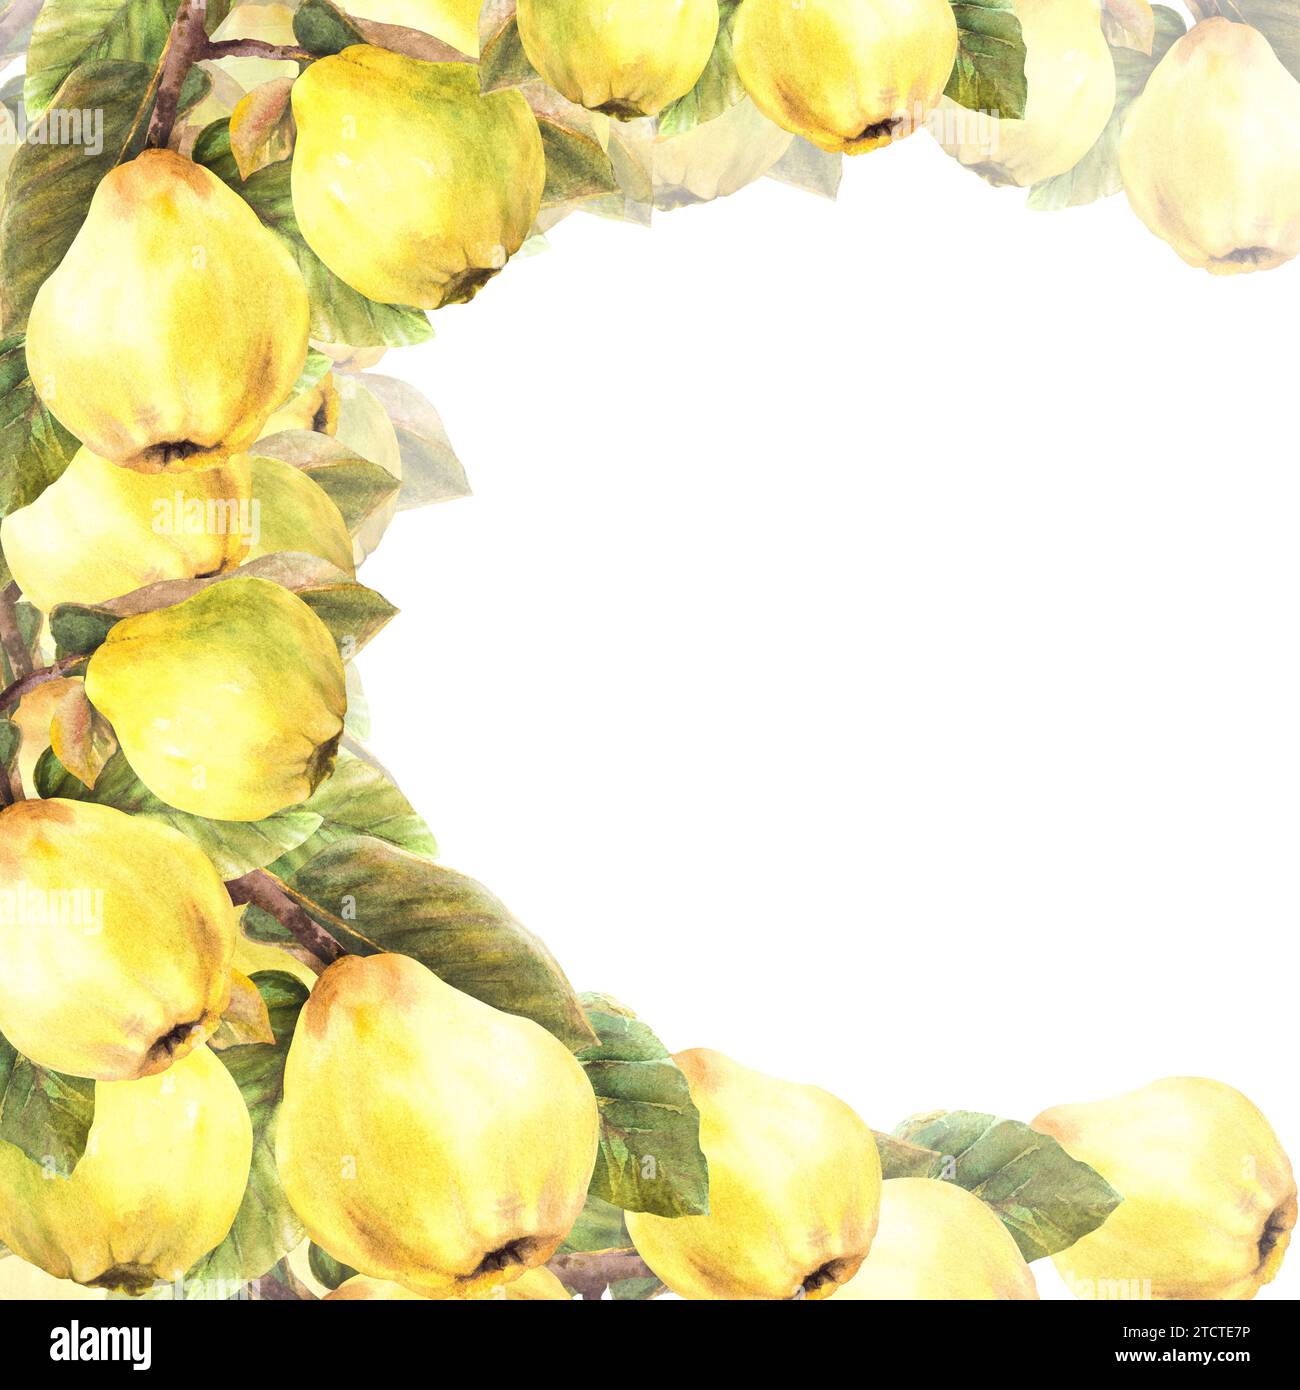 Handgemalte Aquarellvorlage. Zweige mit gelb reifer, saftiger Quitte, ganze Früchte und Blätter. Clipart-Illustration für Banner, Rahmen, Karte Stockfoto